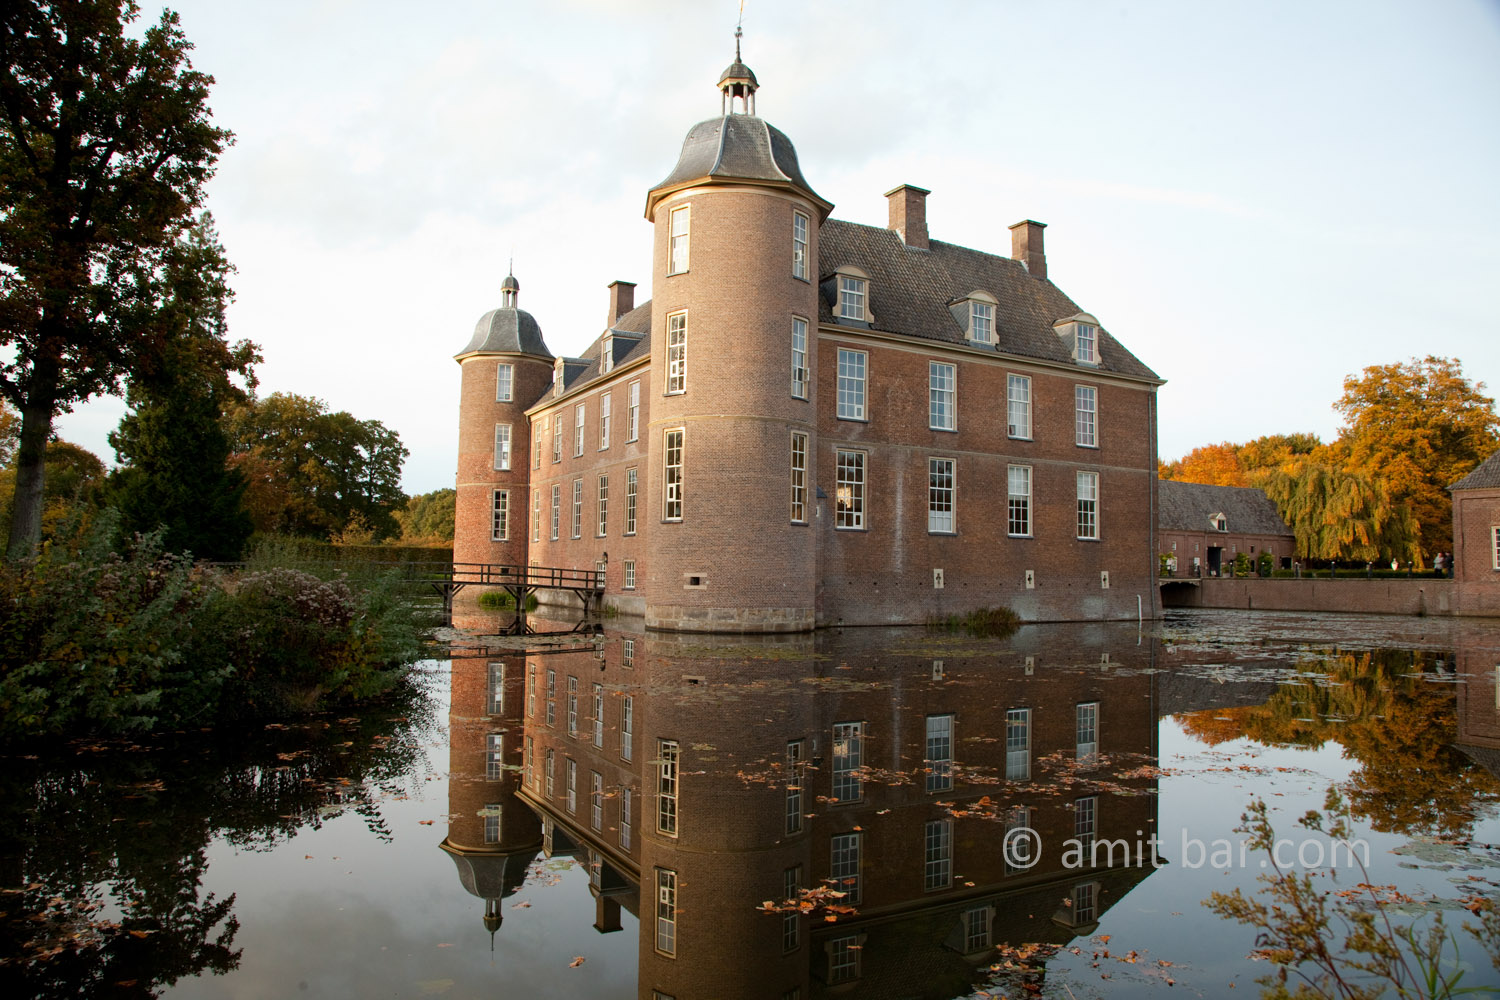 Autumn castle II: Autumn at castle Slangenburg in De Achterhoek, The Netherlands